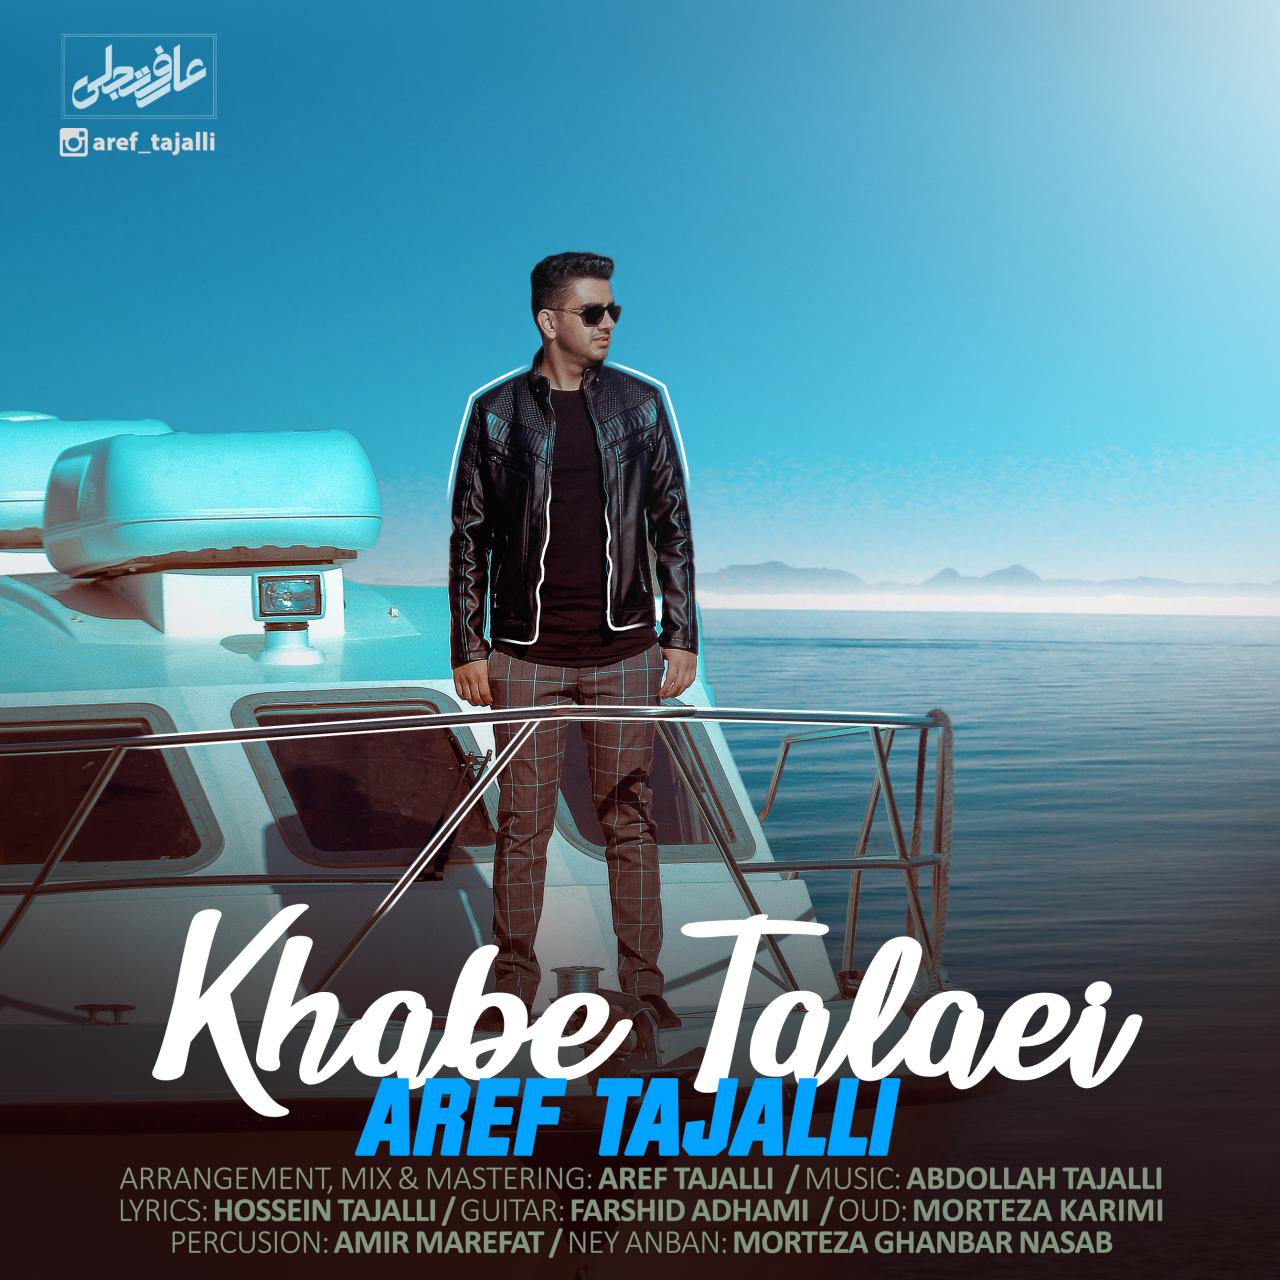  دانلود آهنگ جدید عارف تجلی - خواب طلایی | Download New Music By Aref Tajalli - Khab Talaei